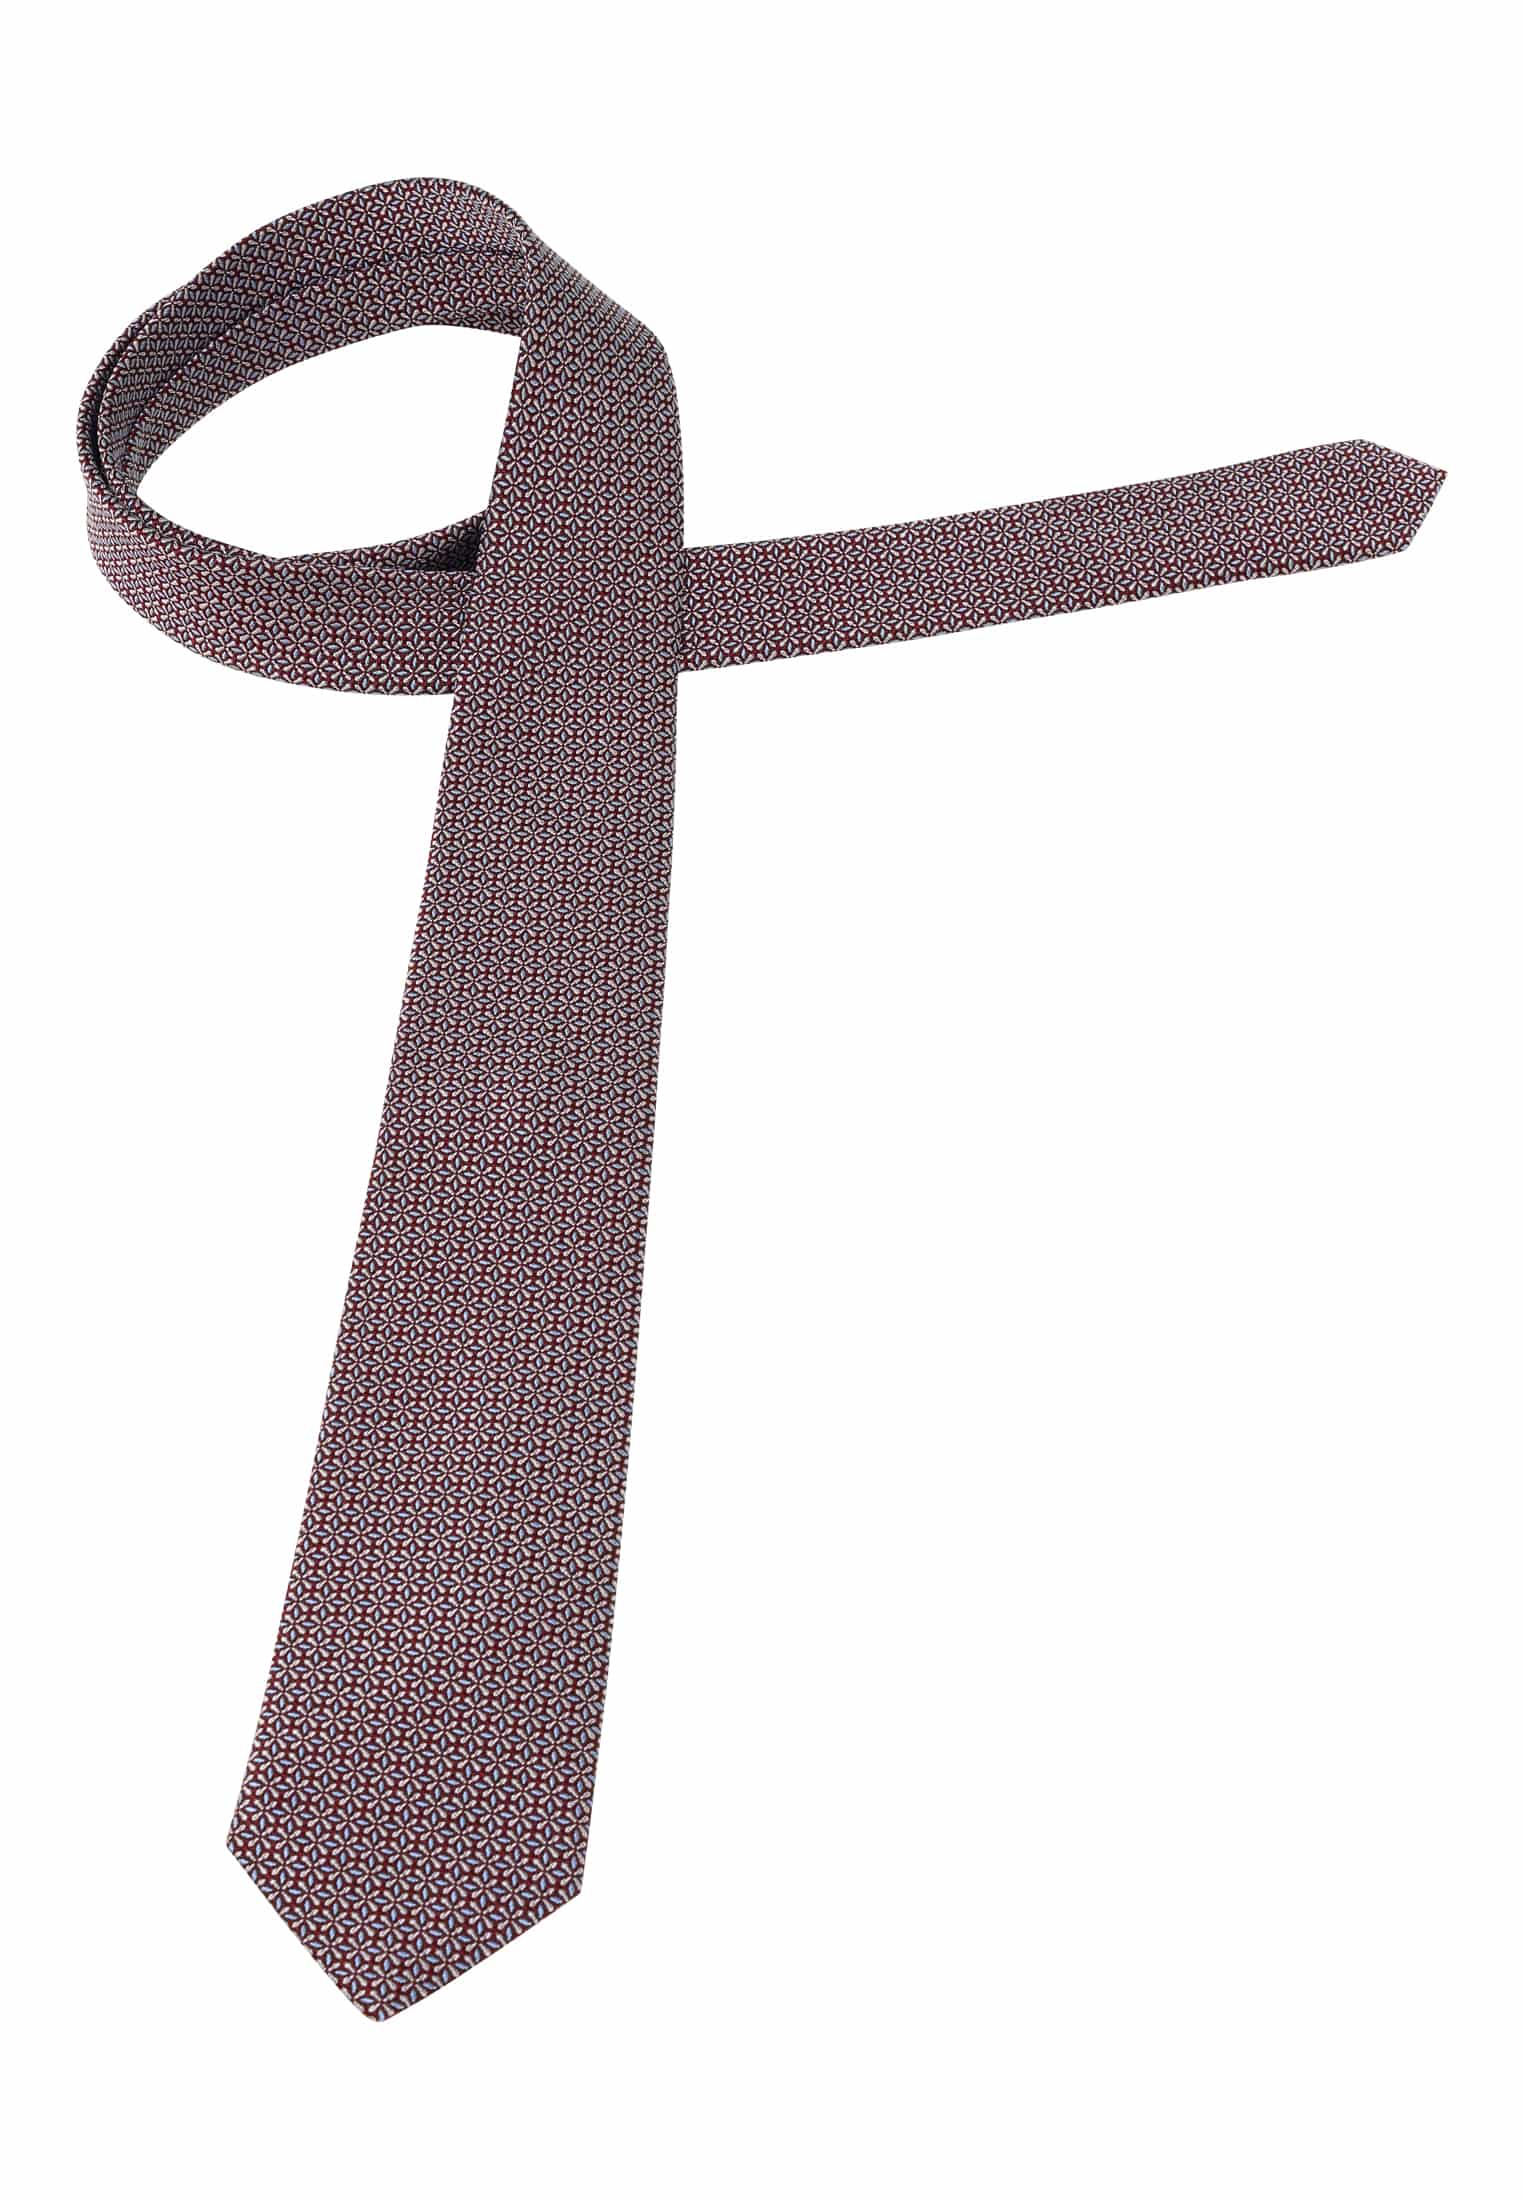 in | | braun | Krawatte strukturiert 142 1AC02043-02-91-142 braun